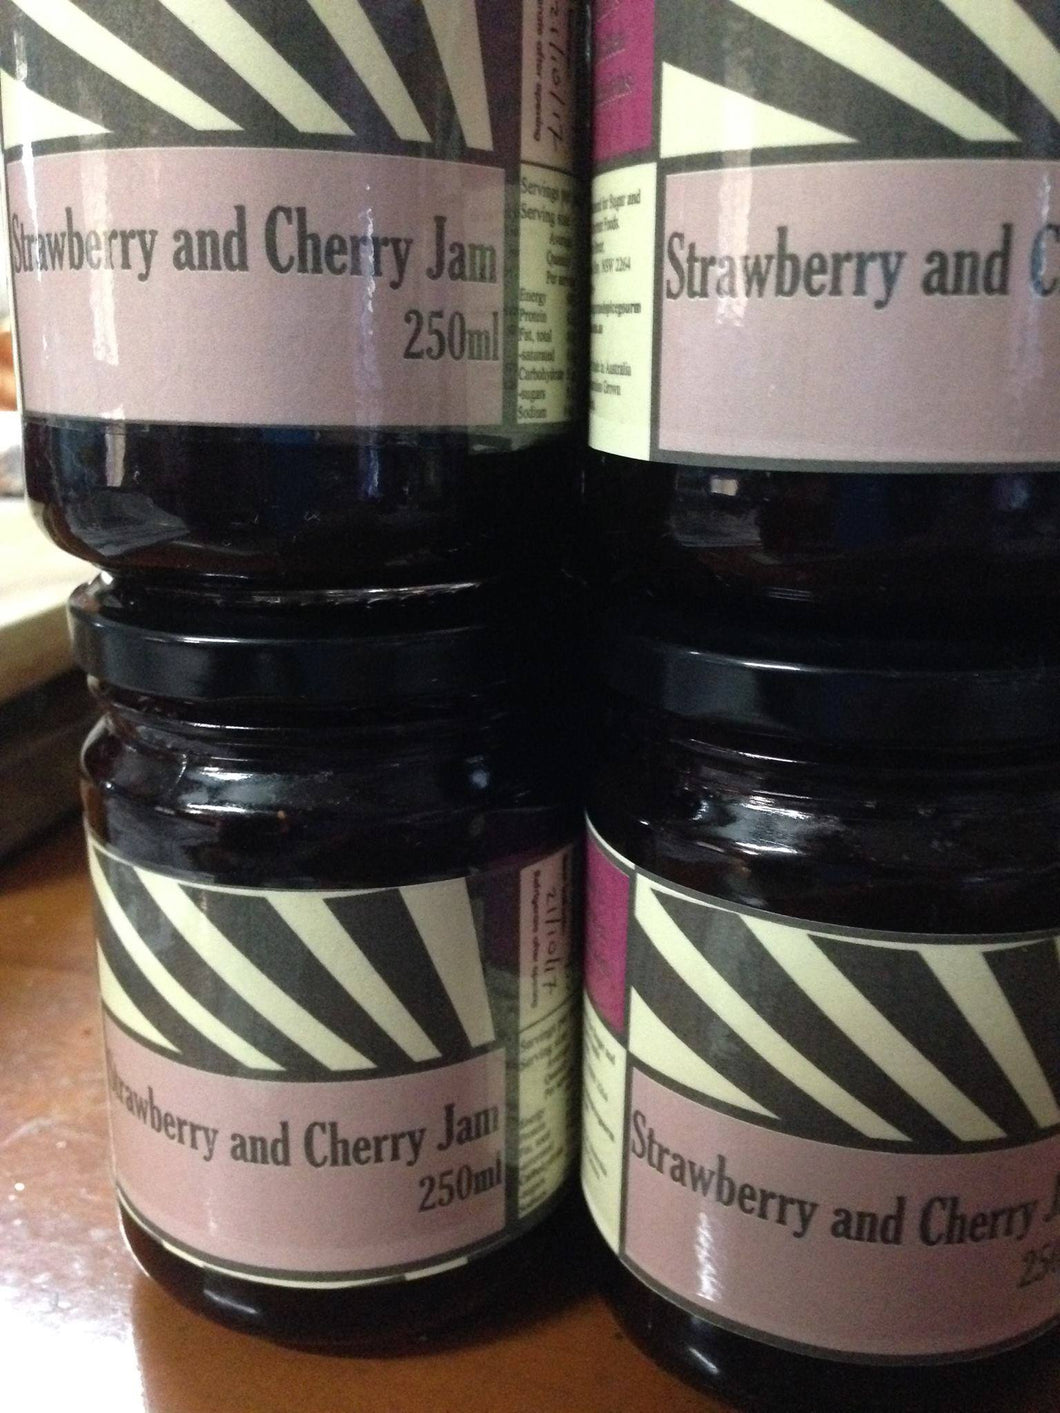 Strawberry and Cherry Jam